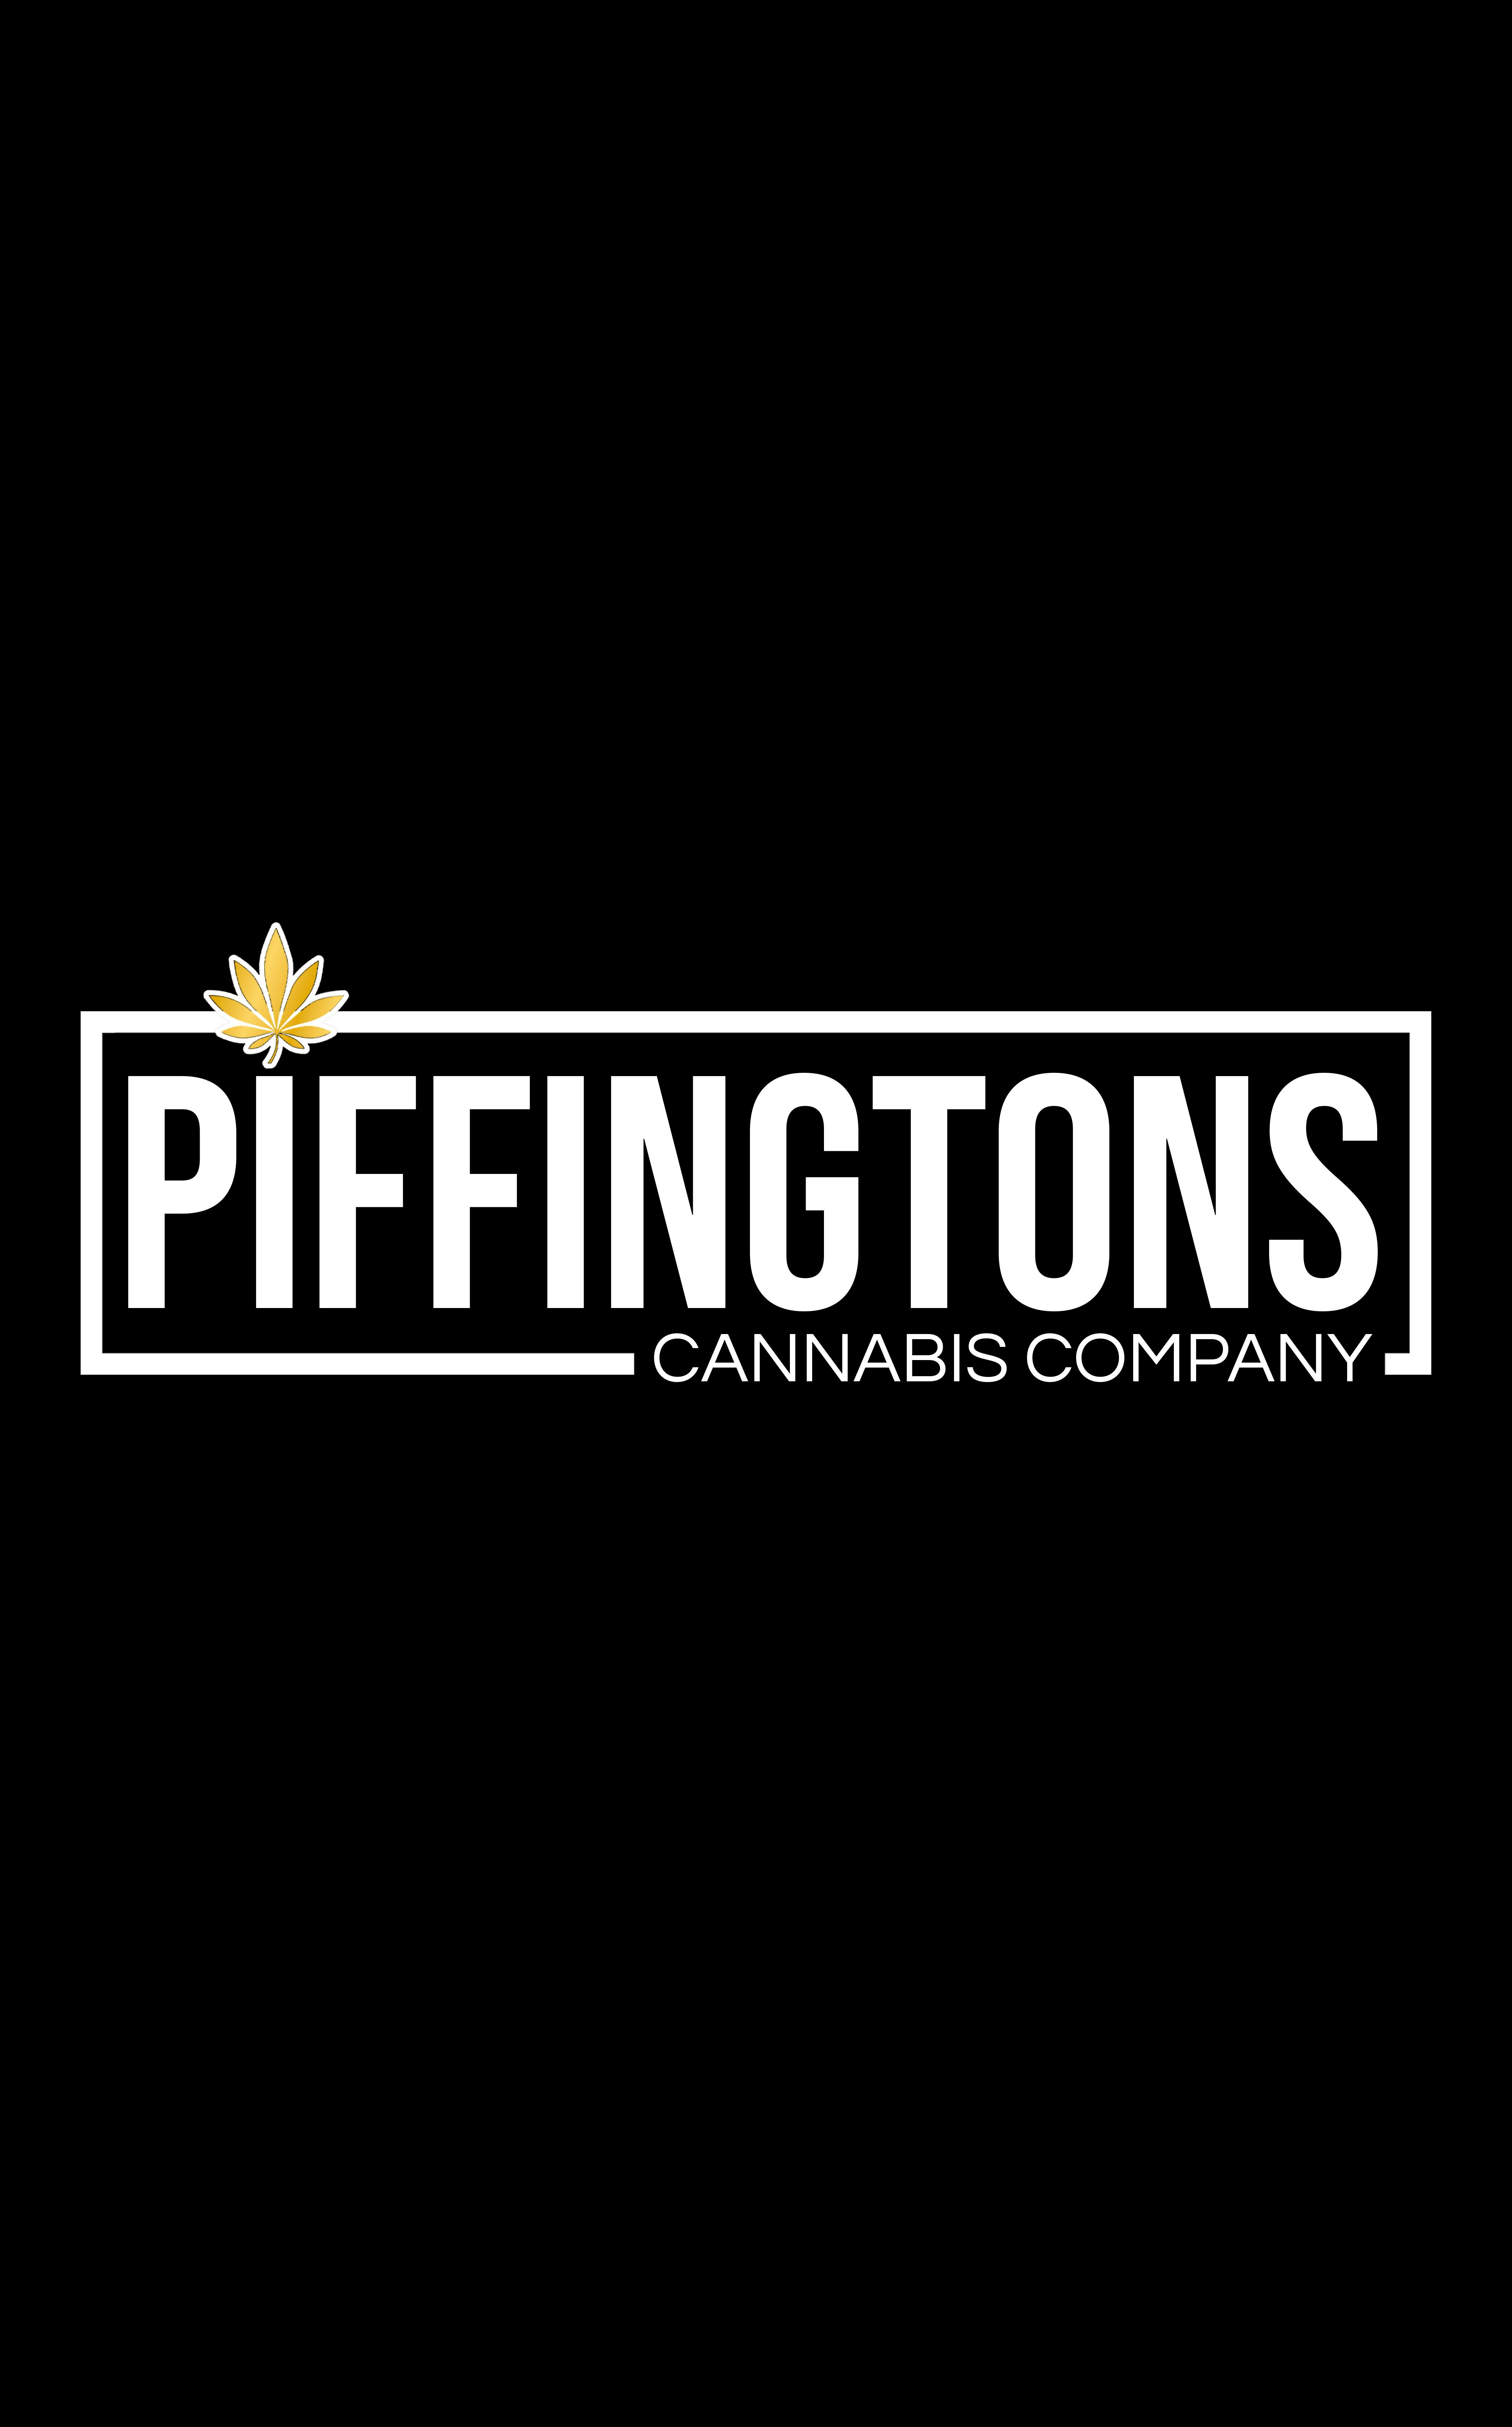 Piffingtons Cannabis Co. | Cannabis Dispensary logo